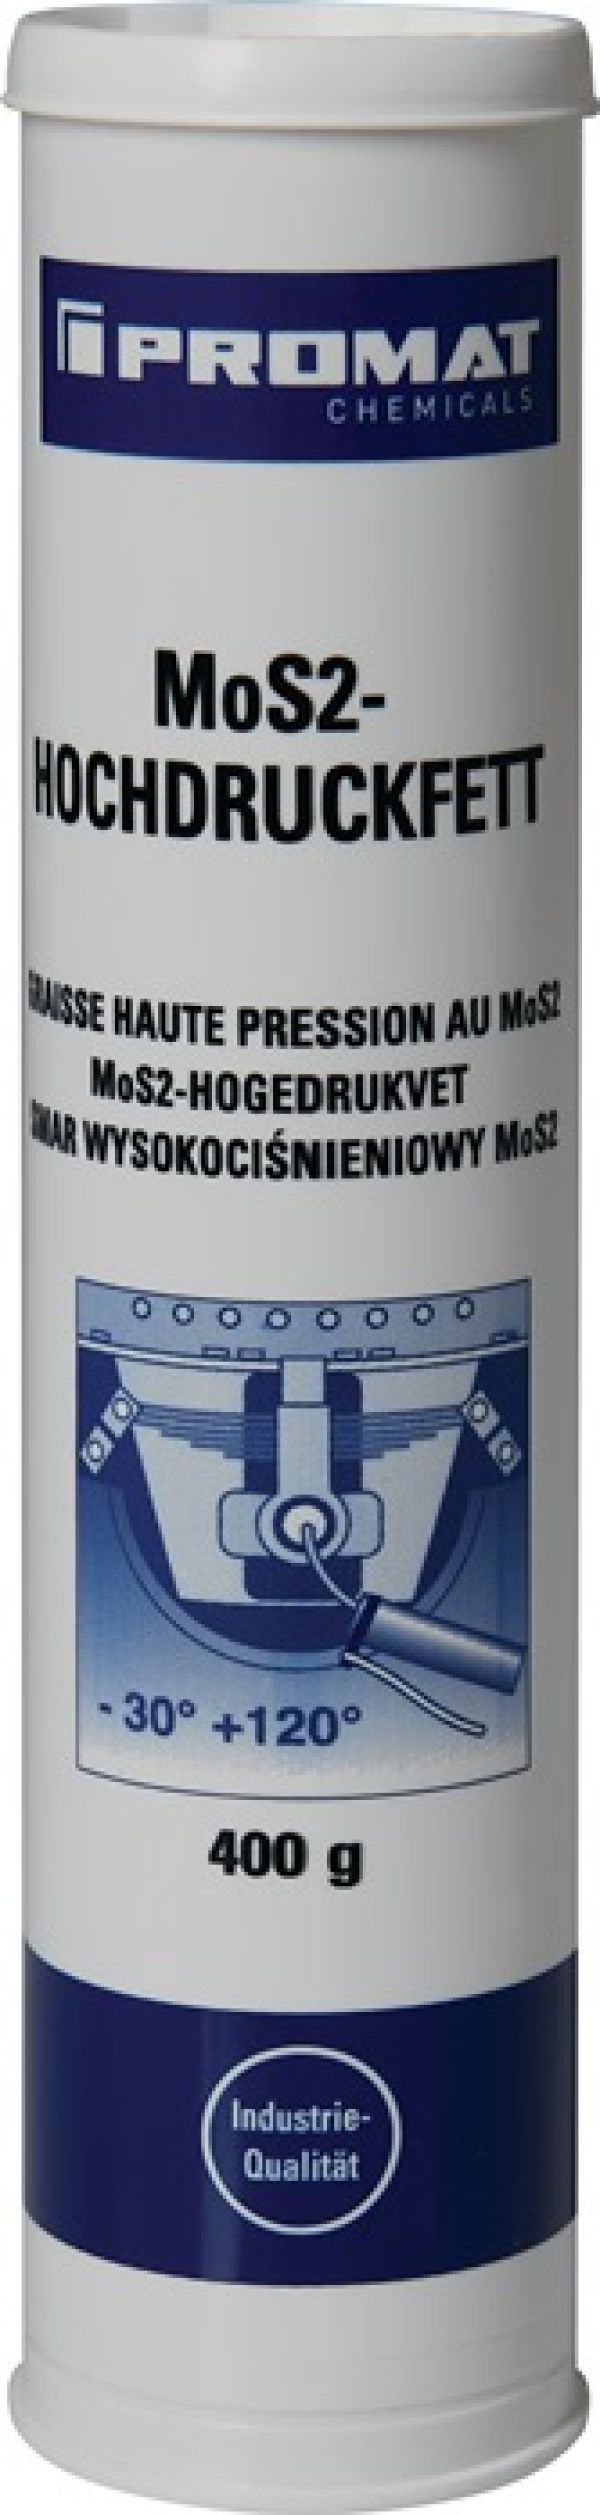 MoS² Hochdruckfett schwarzgrau 400g Kartusche PROMAT CHEMICALS